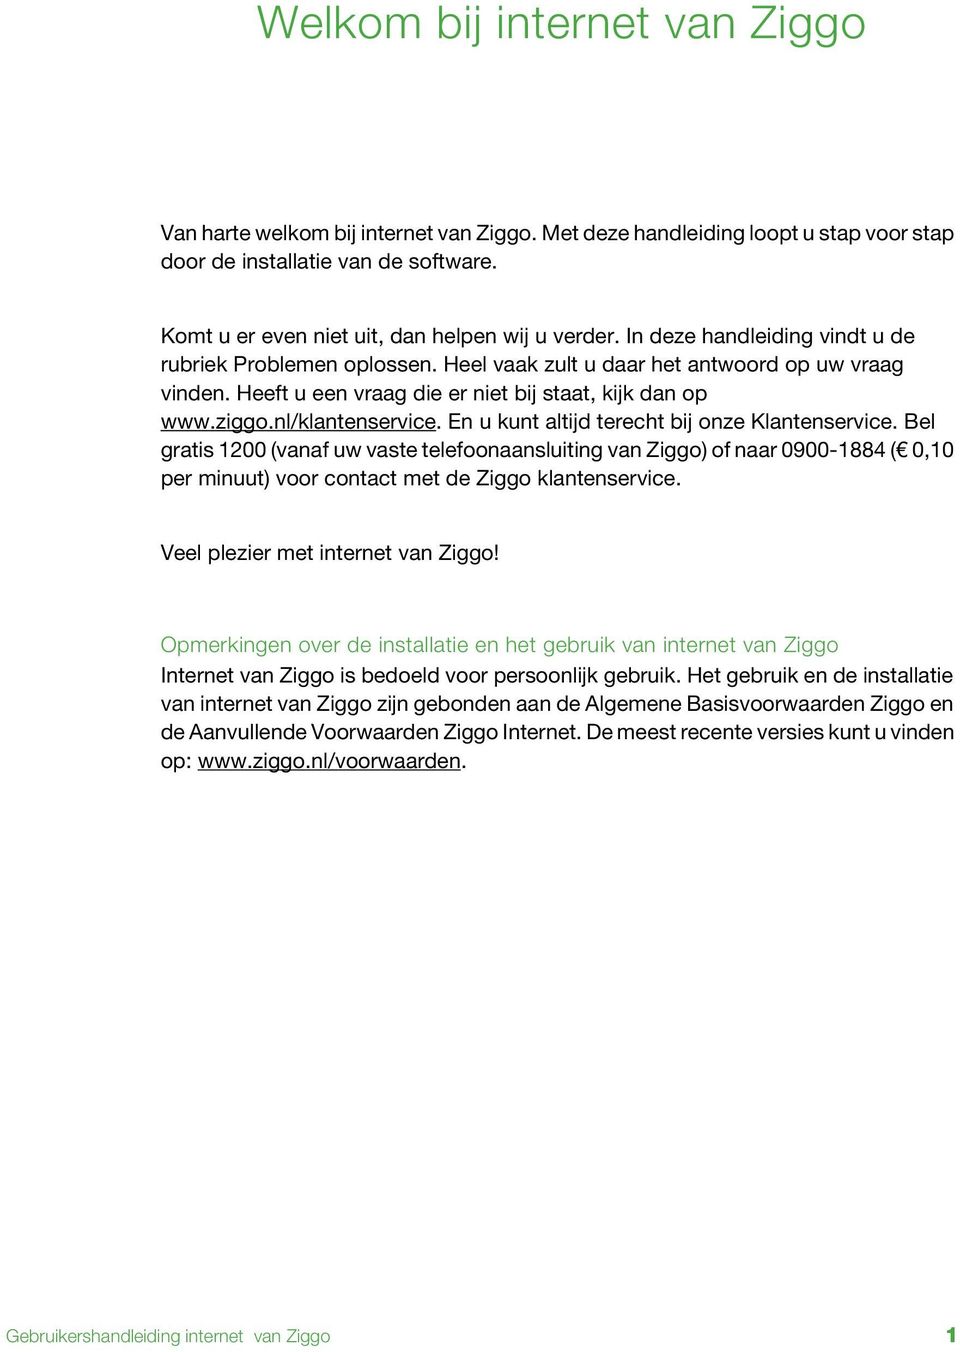 Heeft u een vraag die er niet bij staat, kijk dan op www.ziggo.nl/klantenservice. En u kunt altijd terecht bij onze Klantenservice.